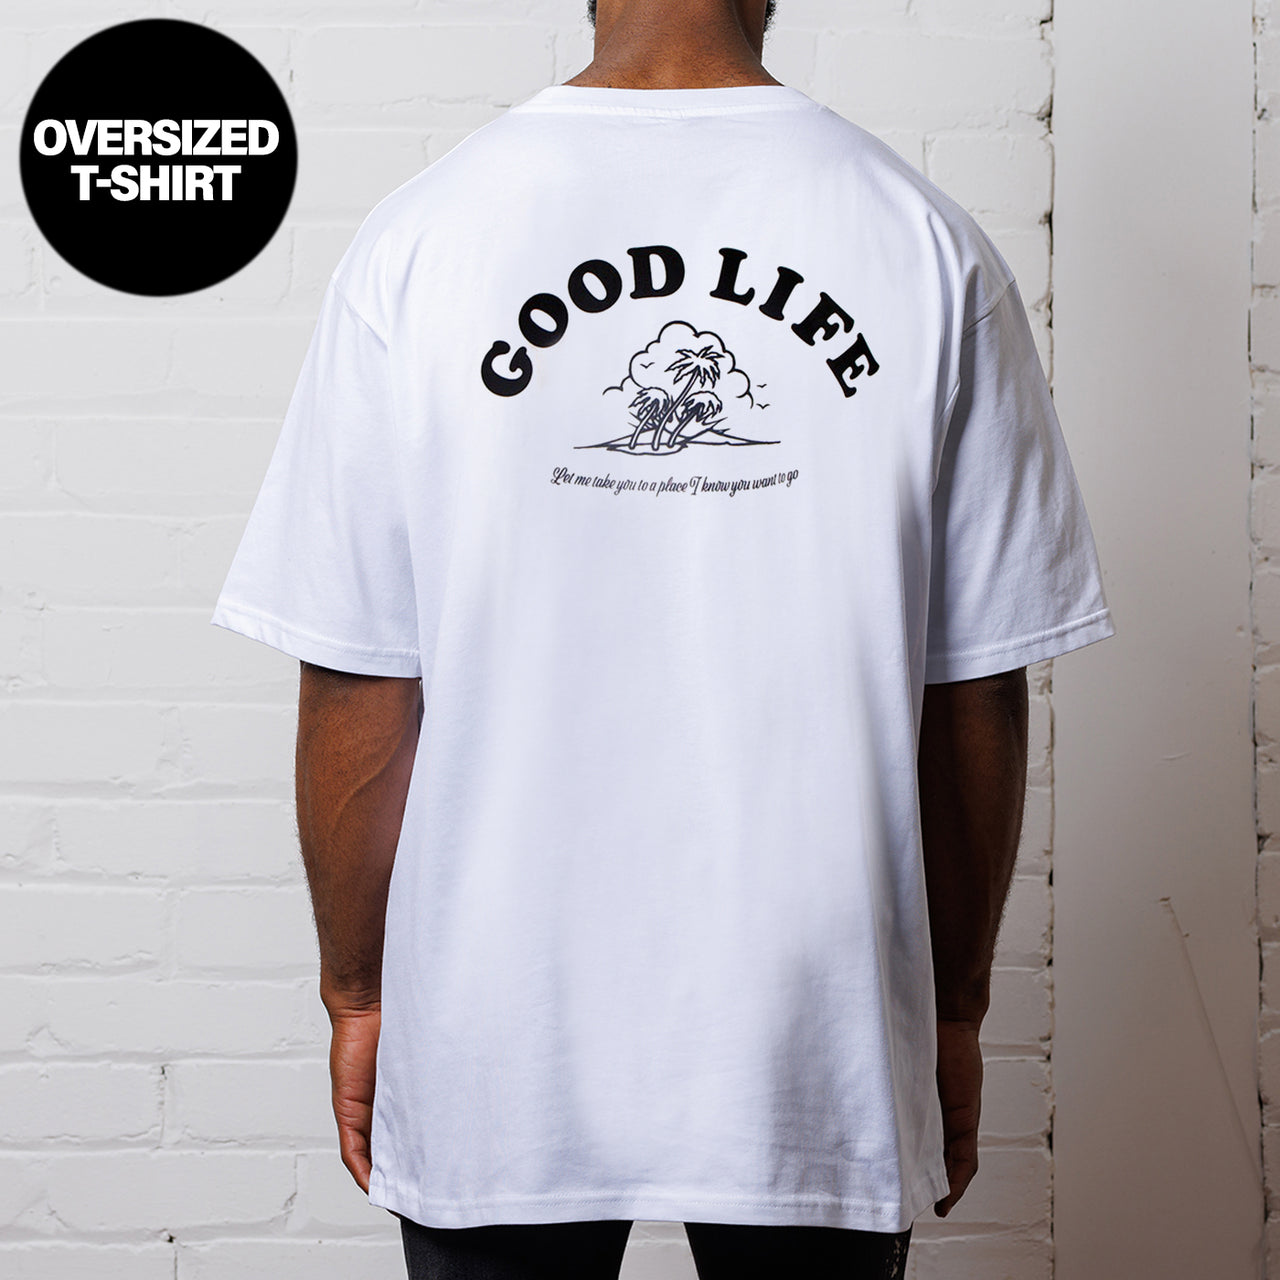 Good Life  - Oversized Tshirt - White